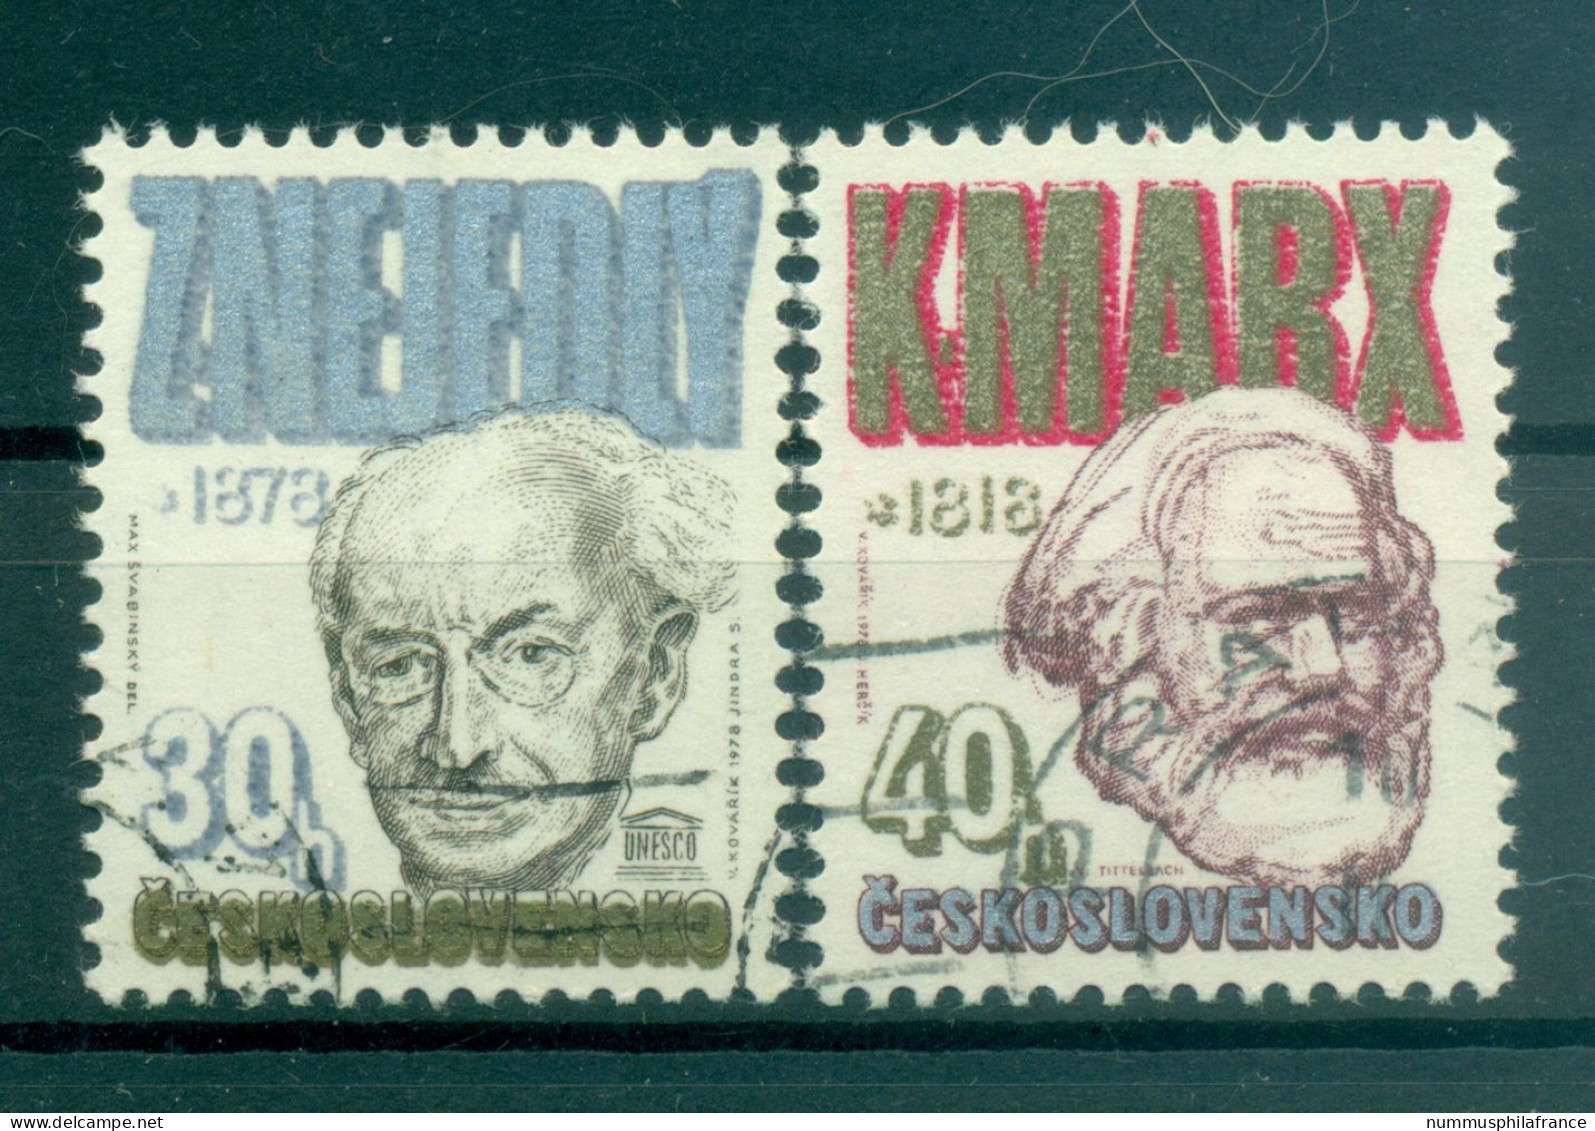 Tchécoslovaquie 1978 - Y & T N. 2254/55 - Anniversaires (Michel N. 2421/22) - Used Stamps